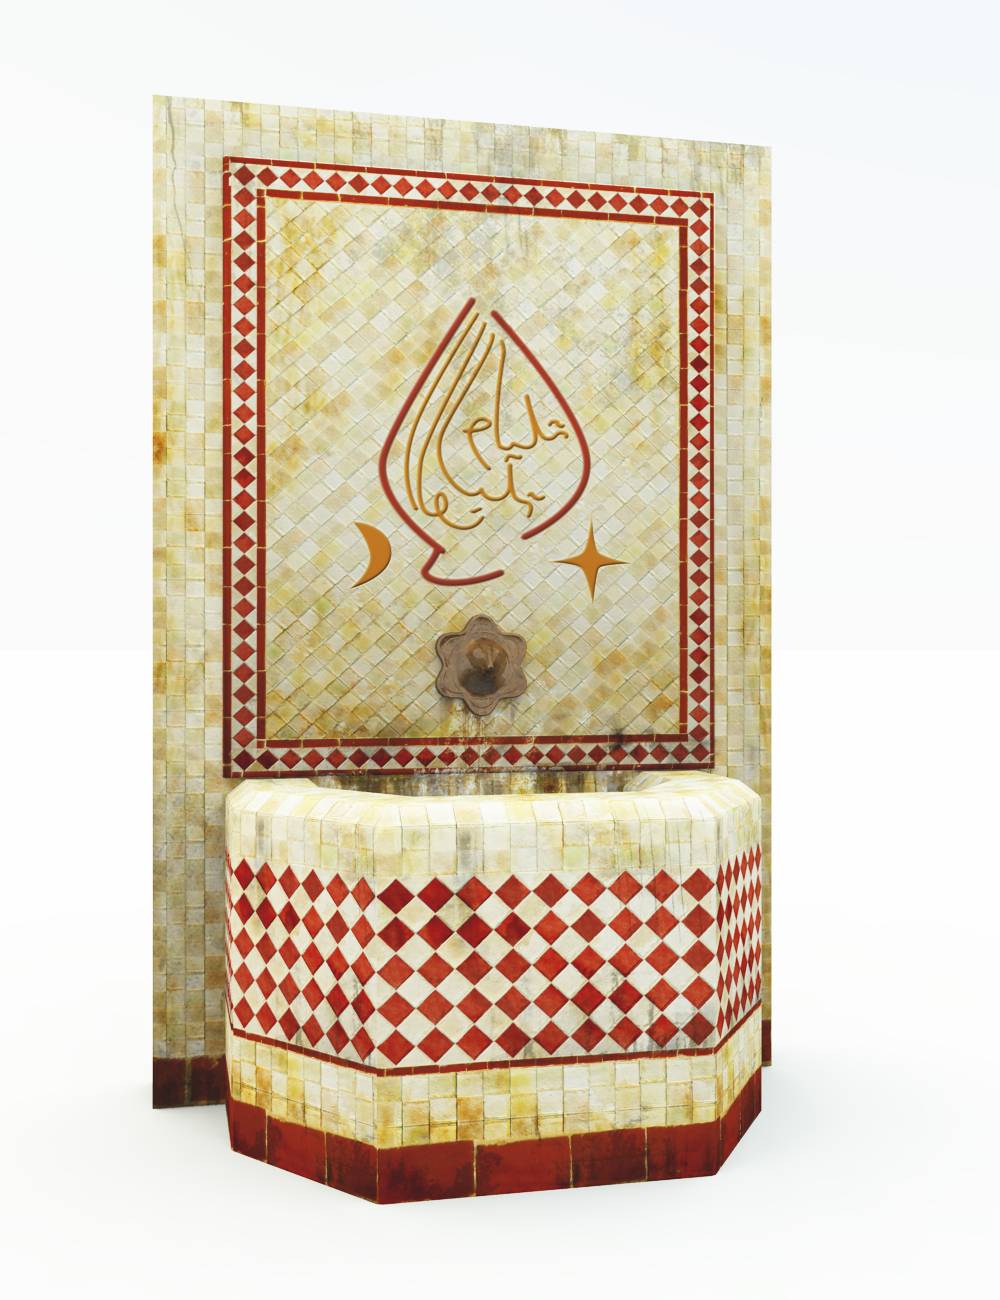 Arabic Fountain 1 by: Cornucopia3D, 3D Models by Daz 3D